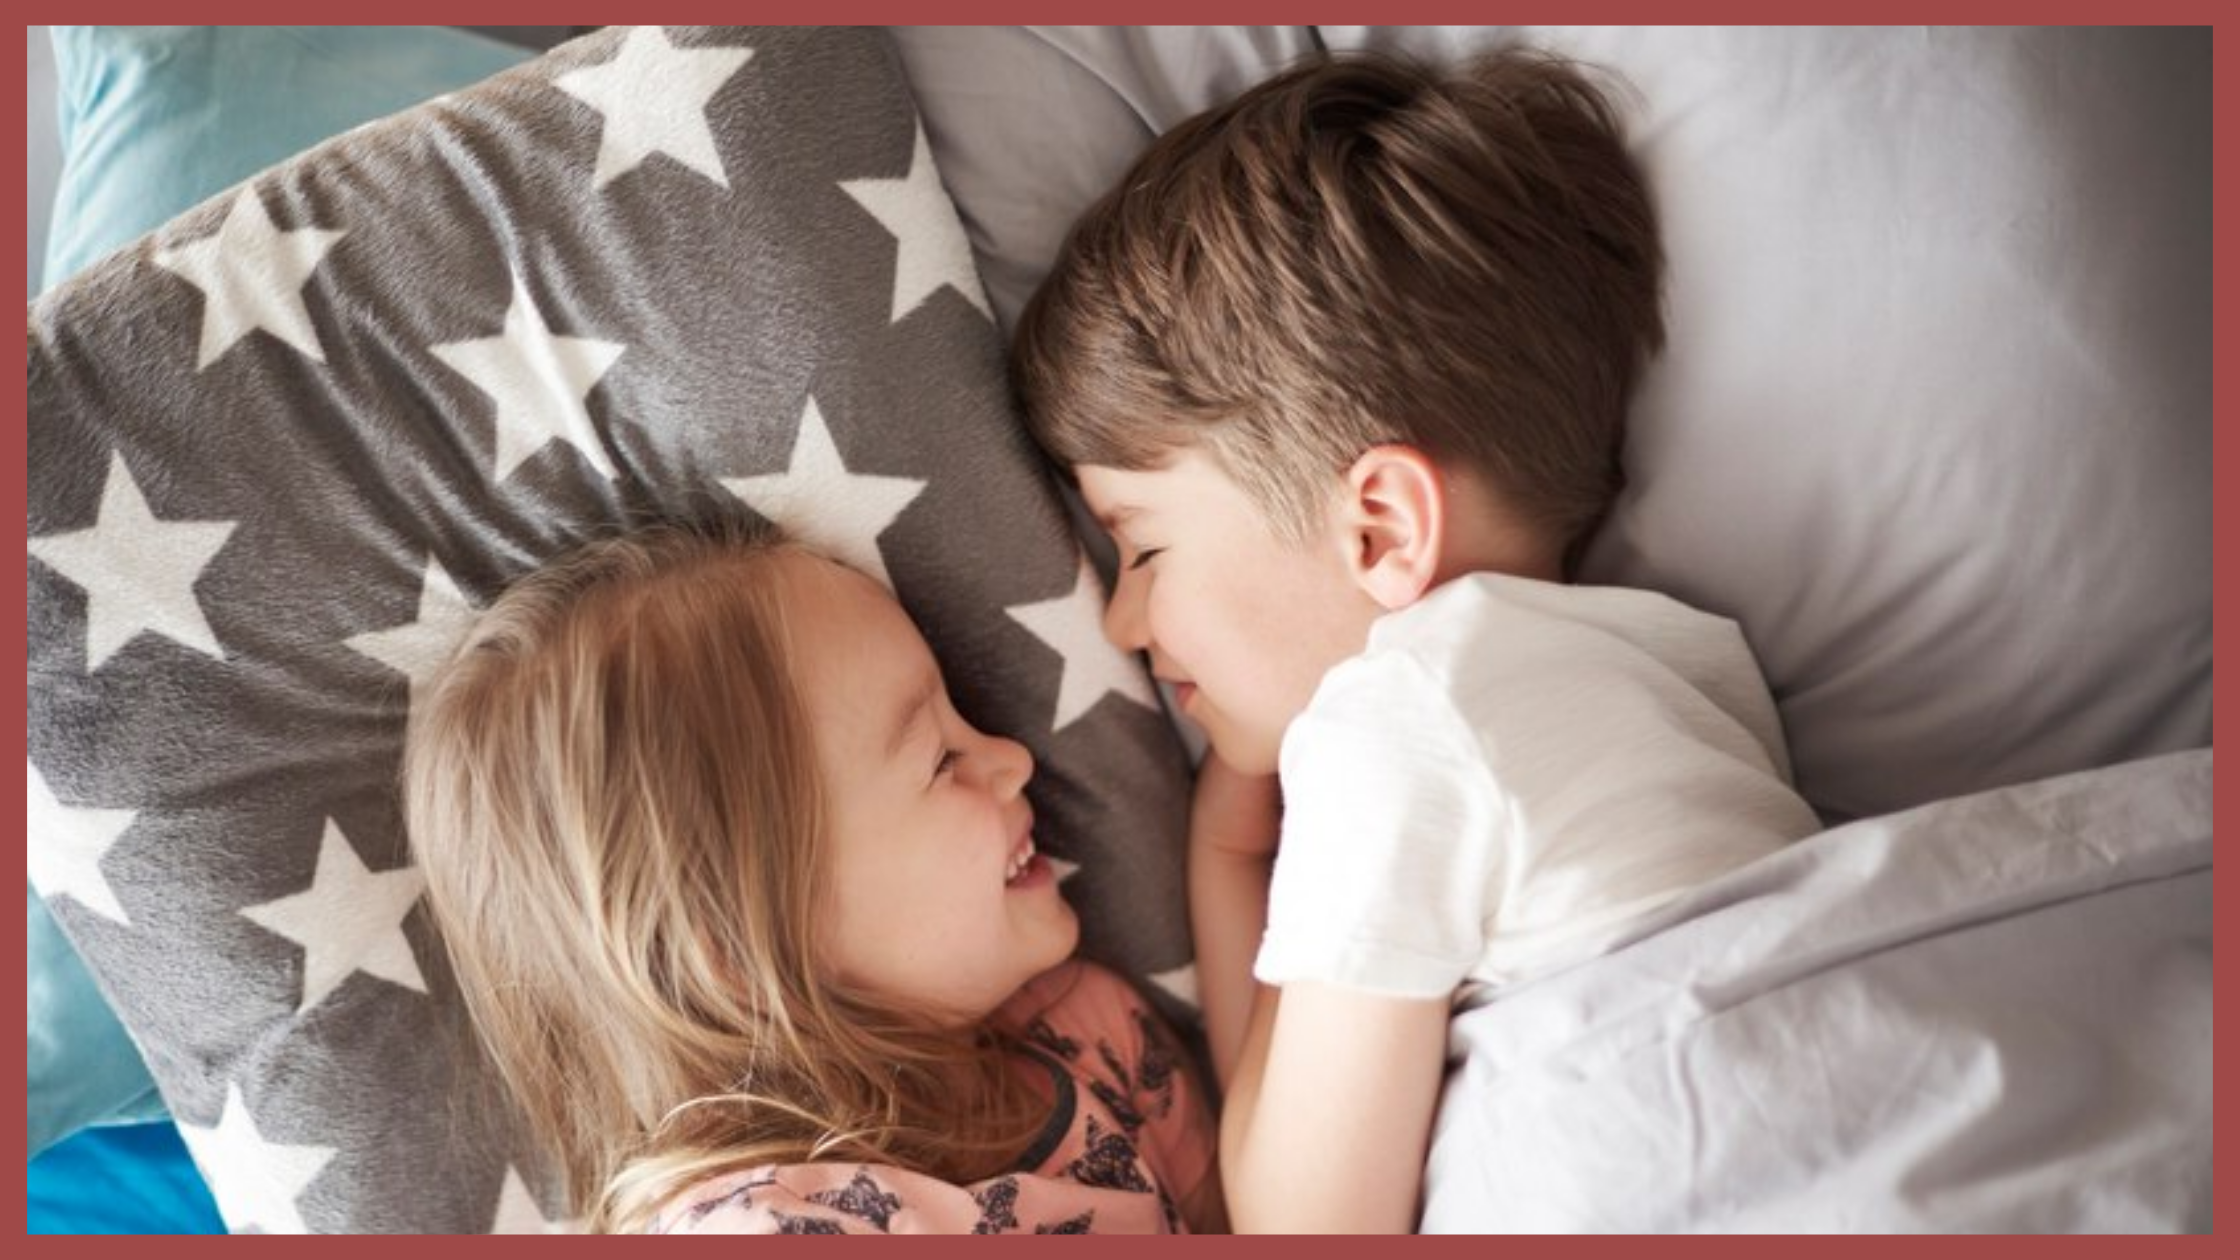 Мальчик с девочкой в постели. Детский поцелуй в кровати. Сестра обнимает брата. Поцелуи детей в кровати.